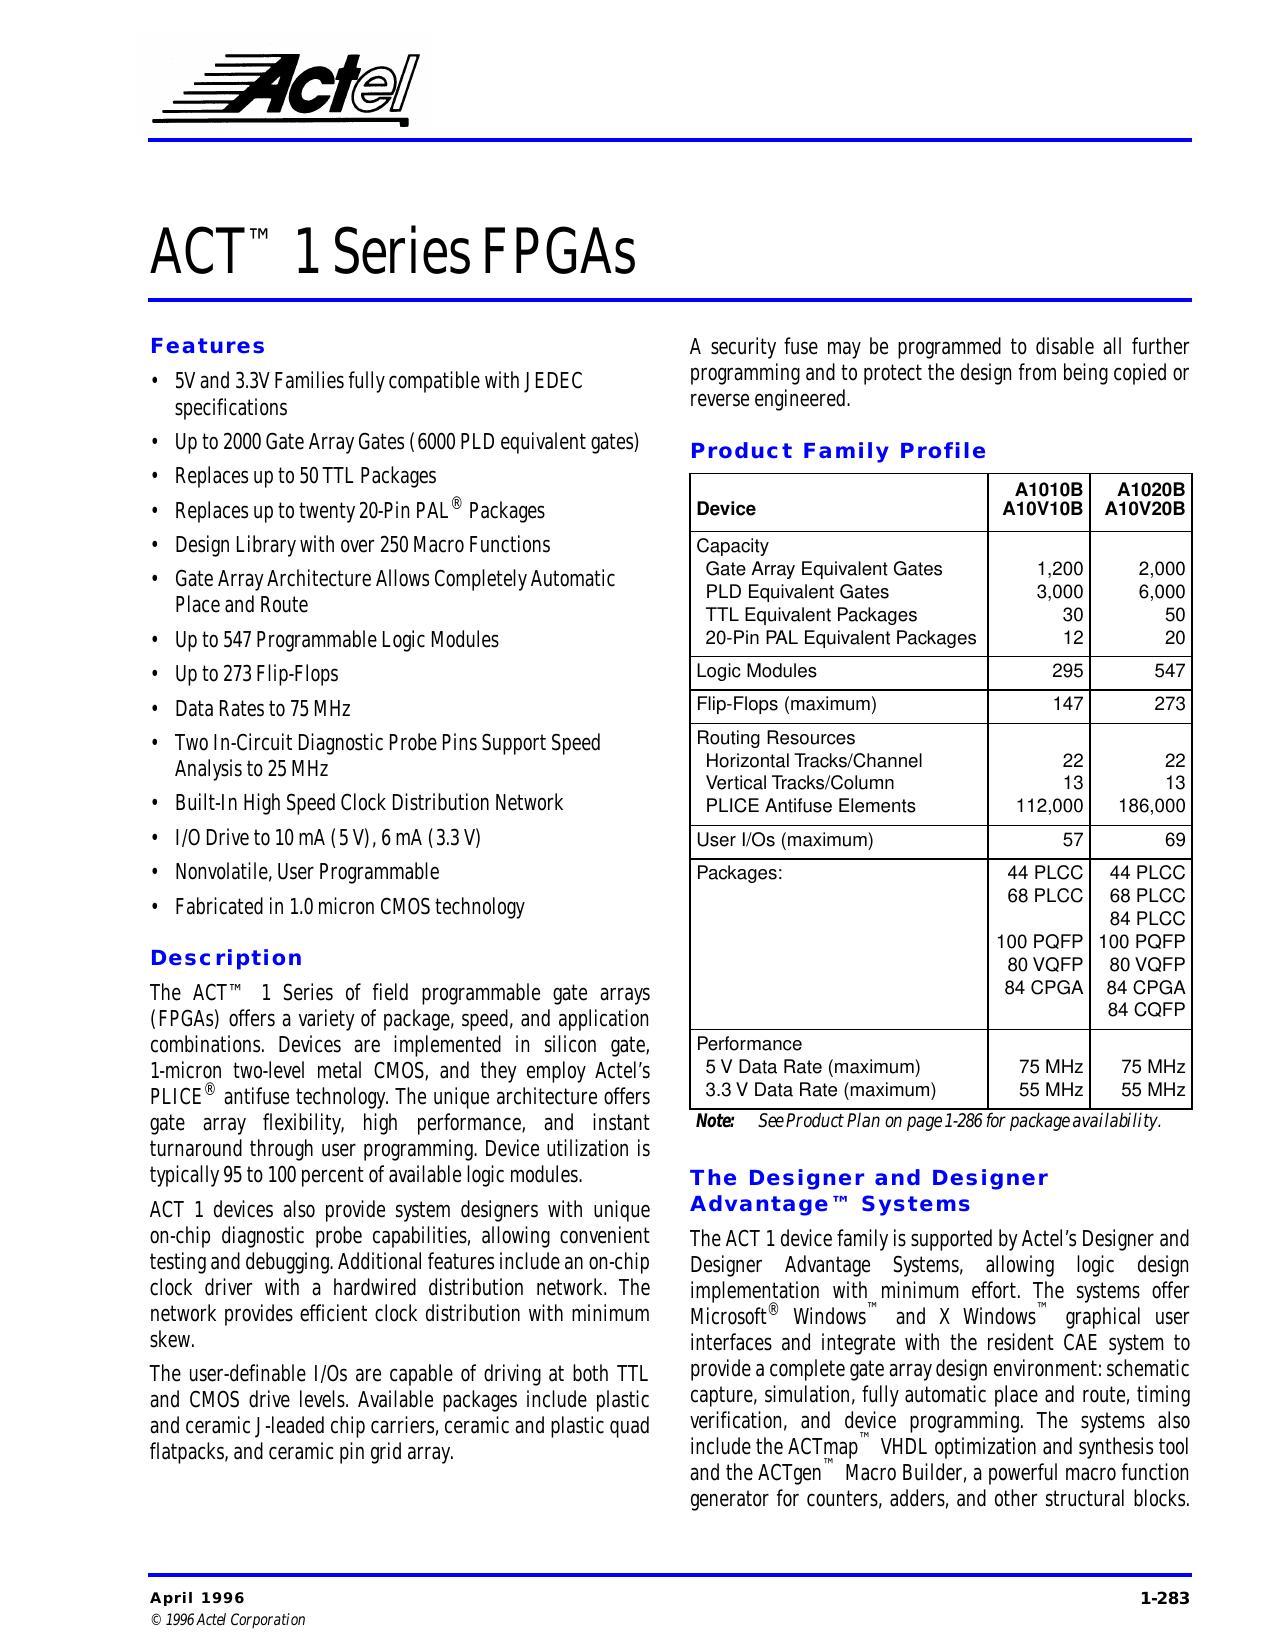 zctel-tm-act-1-series-fpgas.pdf